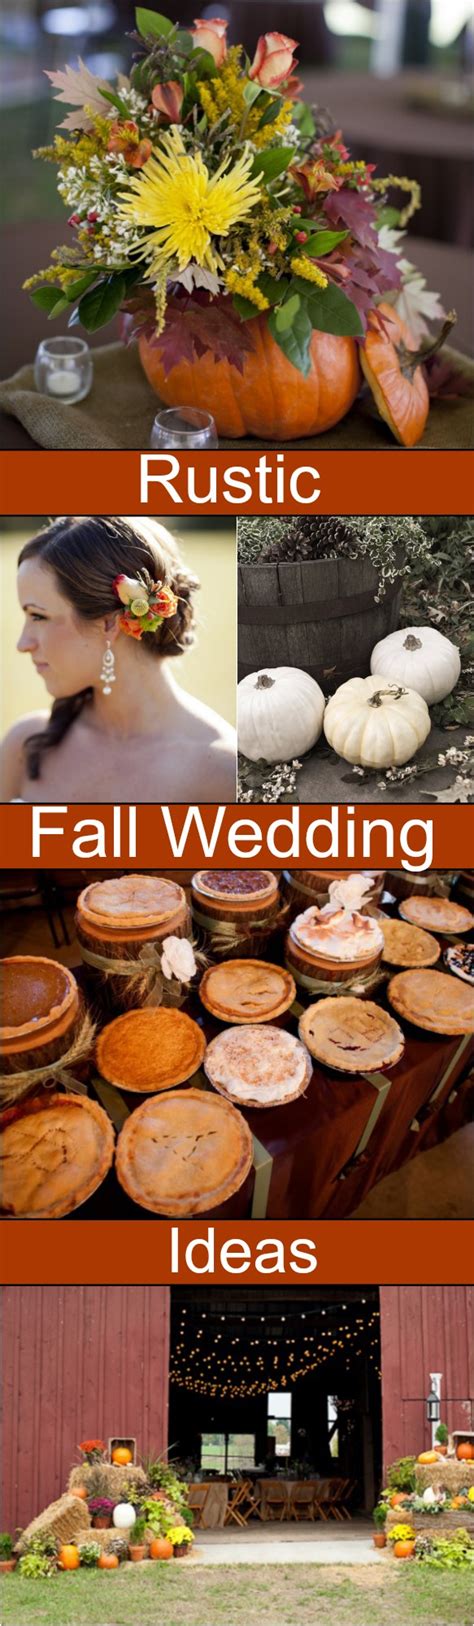 Fall Wedding Ideas For A Rustic Wedding Rustic Wedding Chic